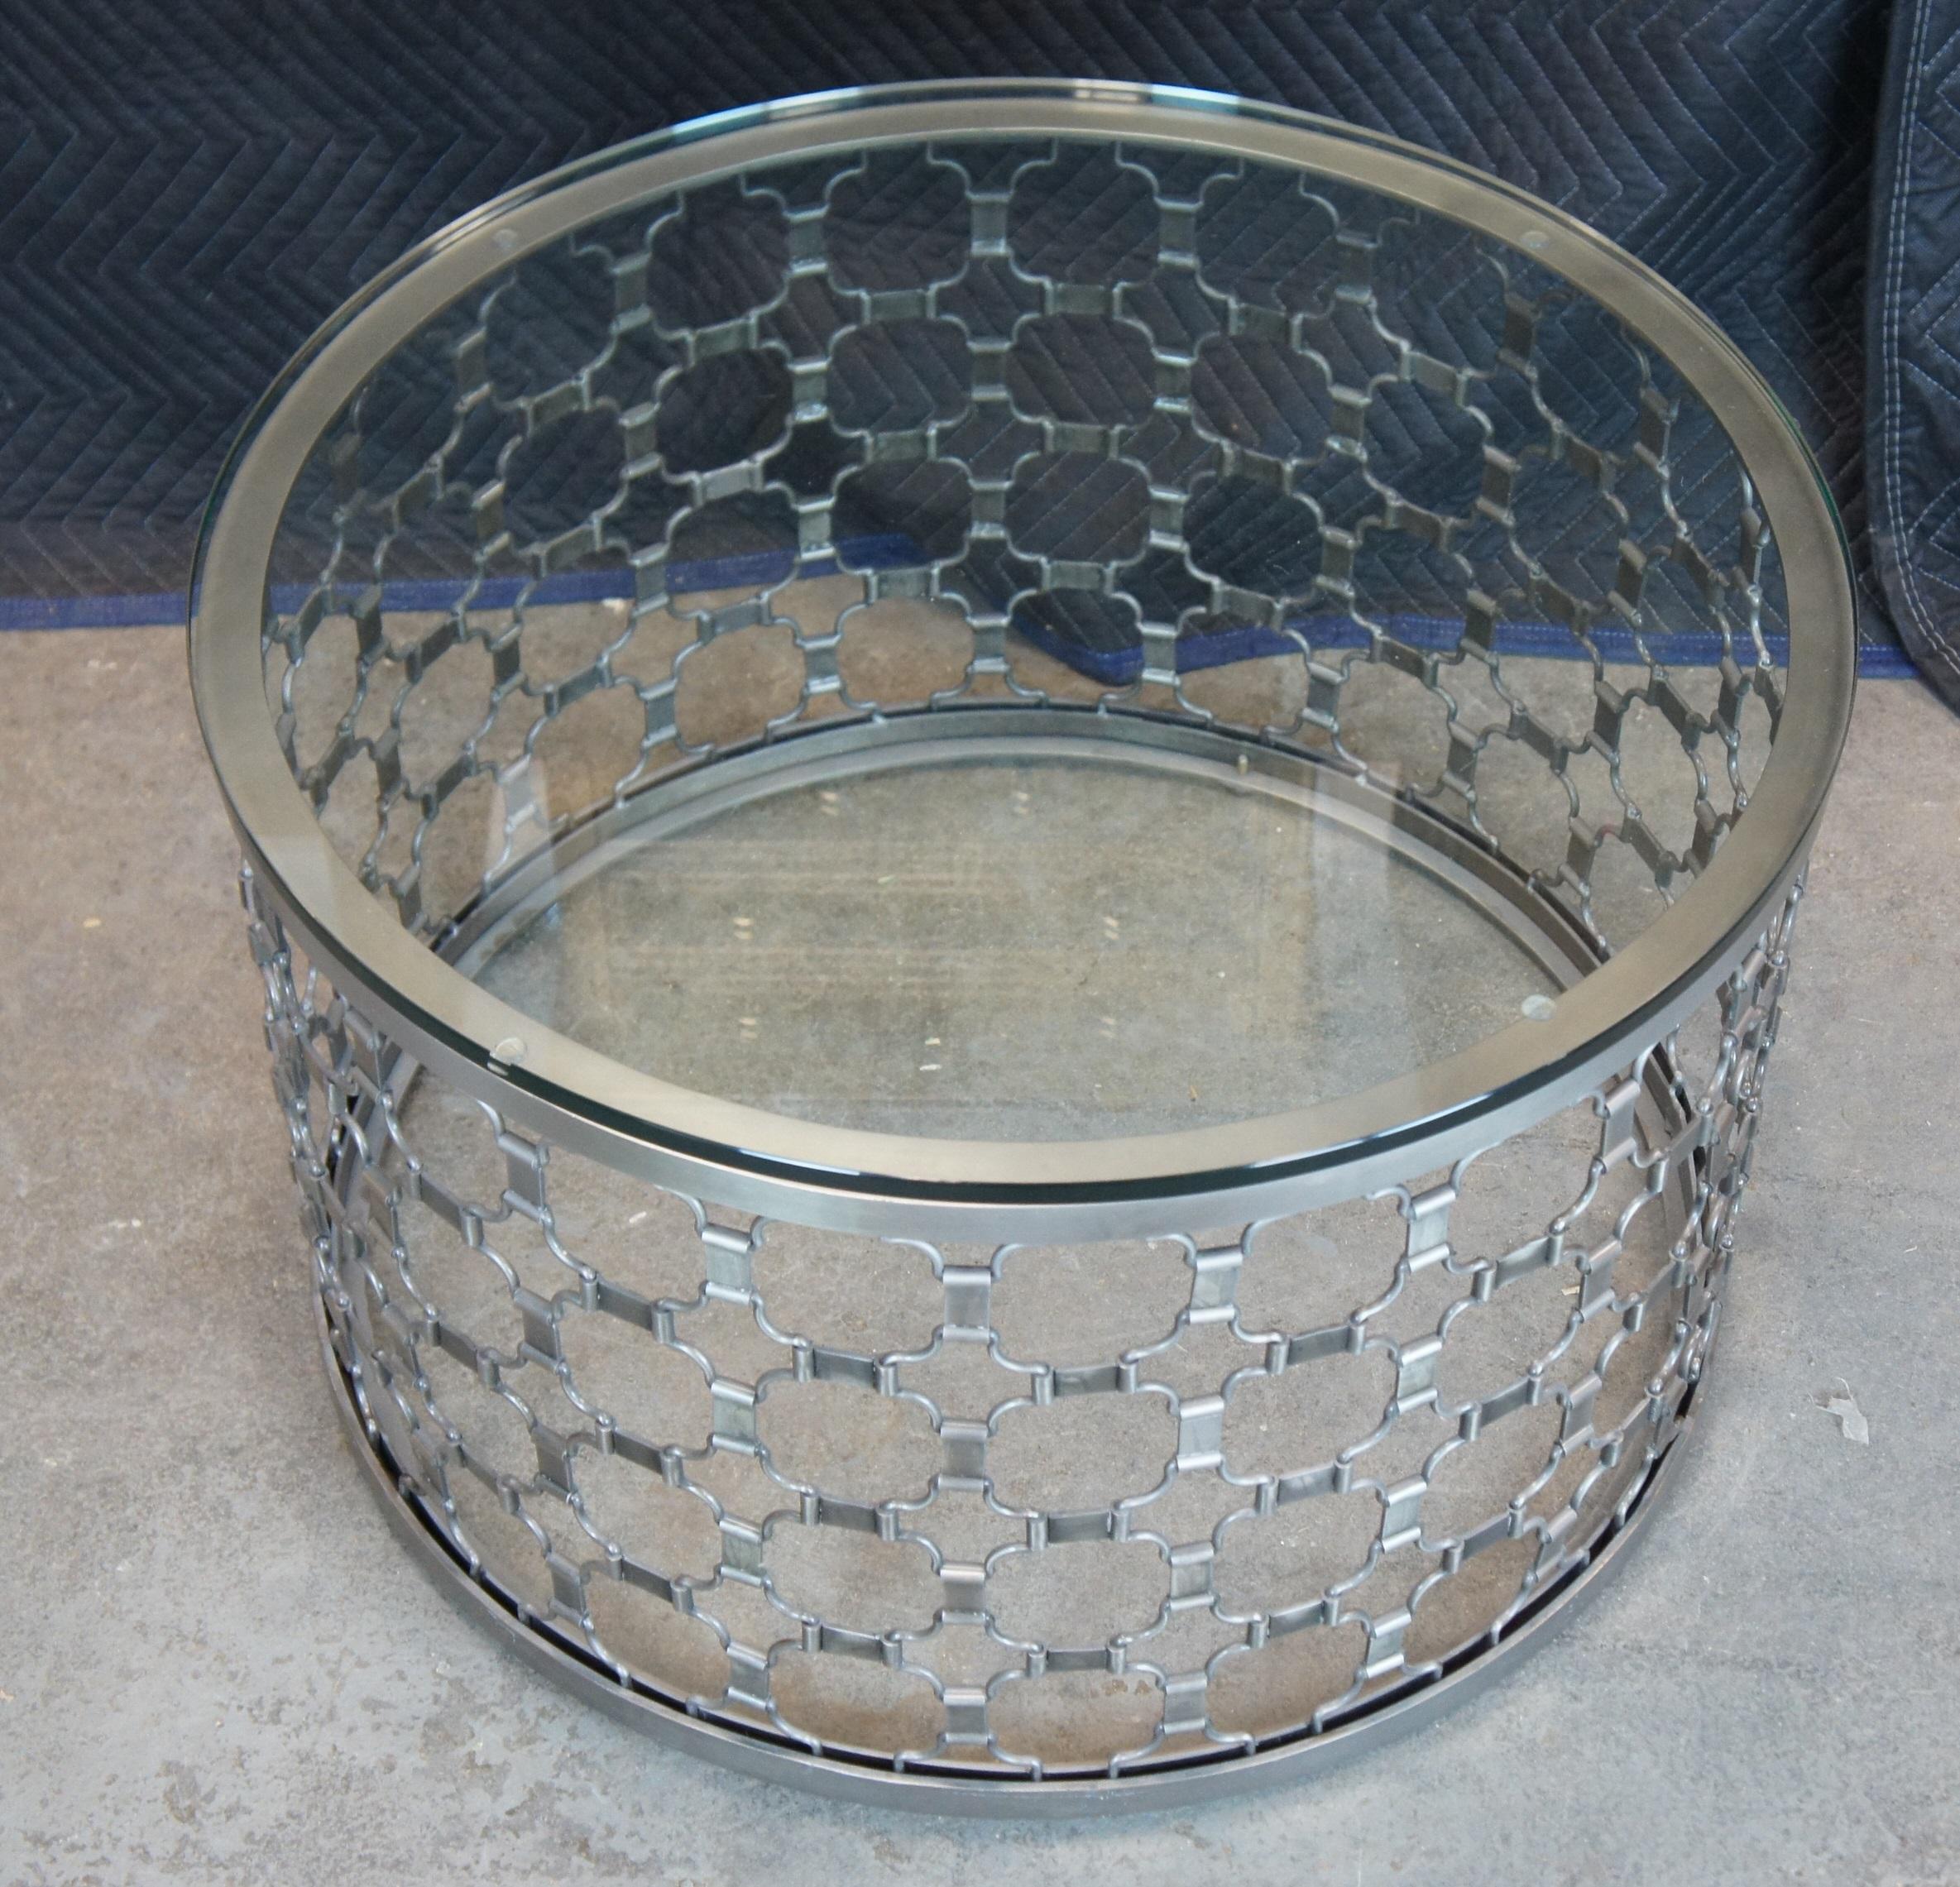 arhaus drum table